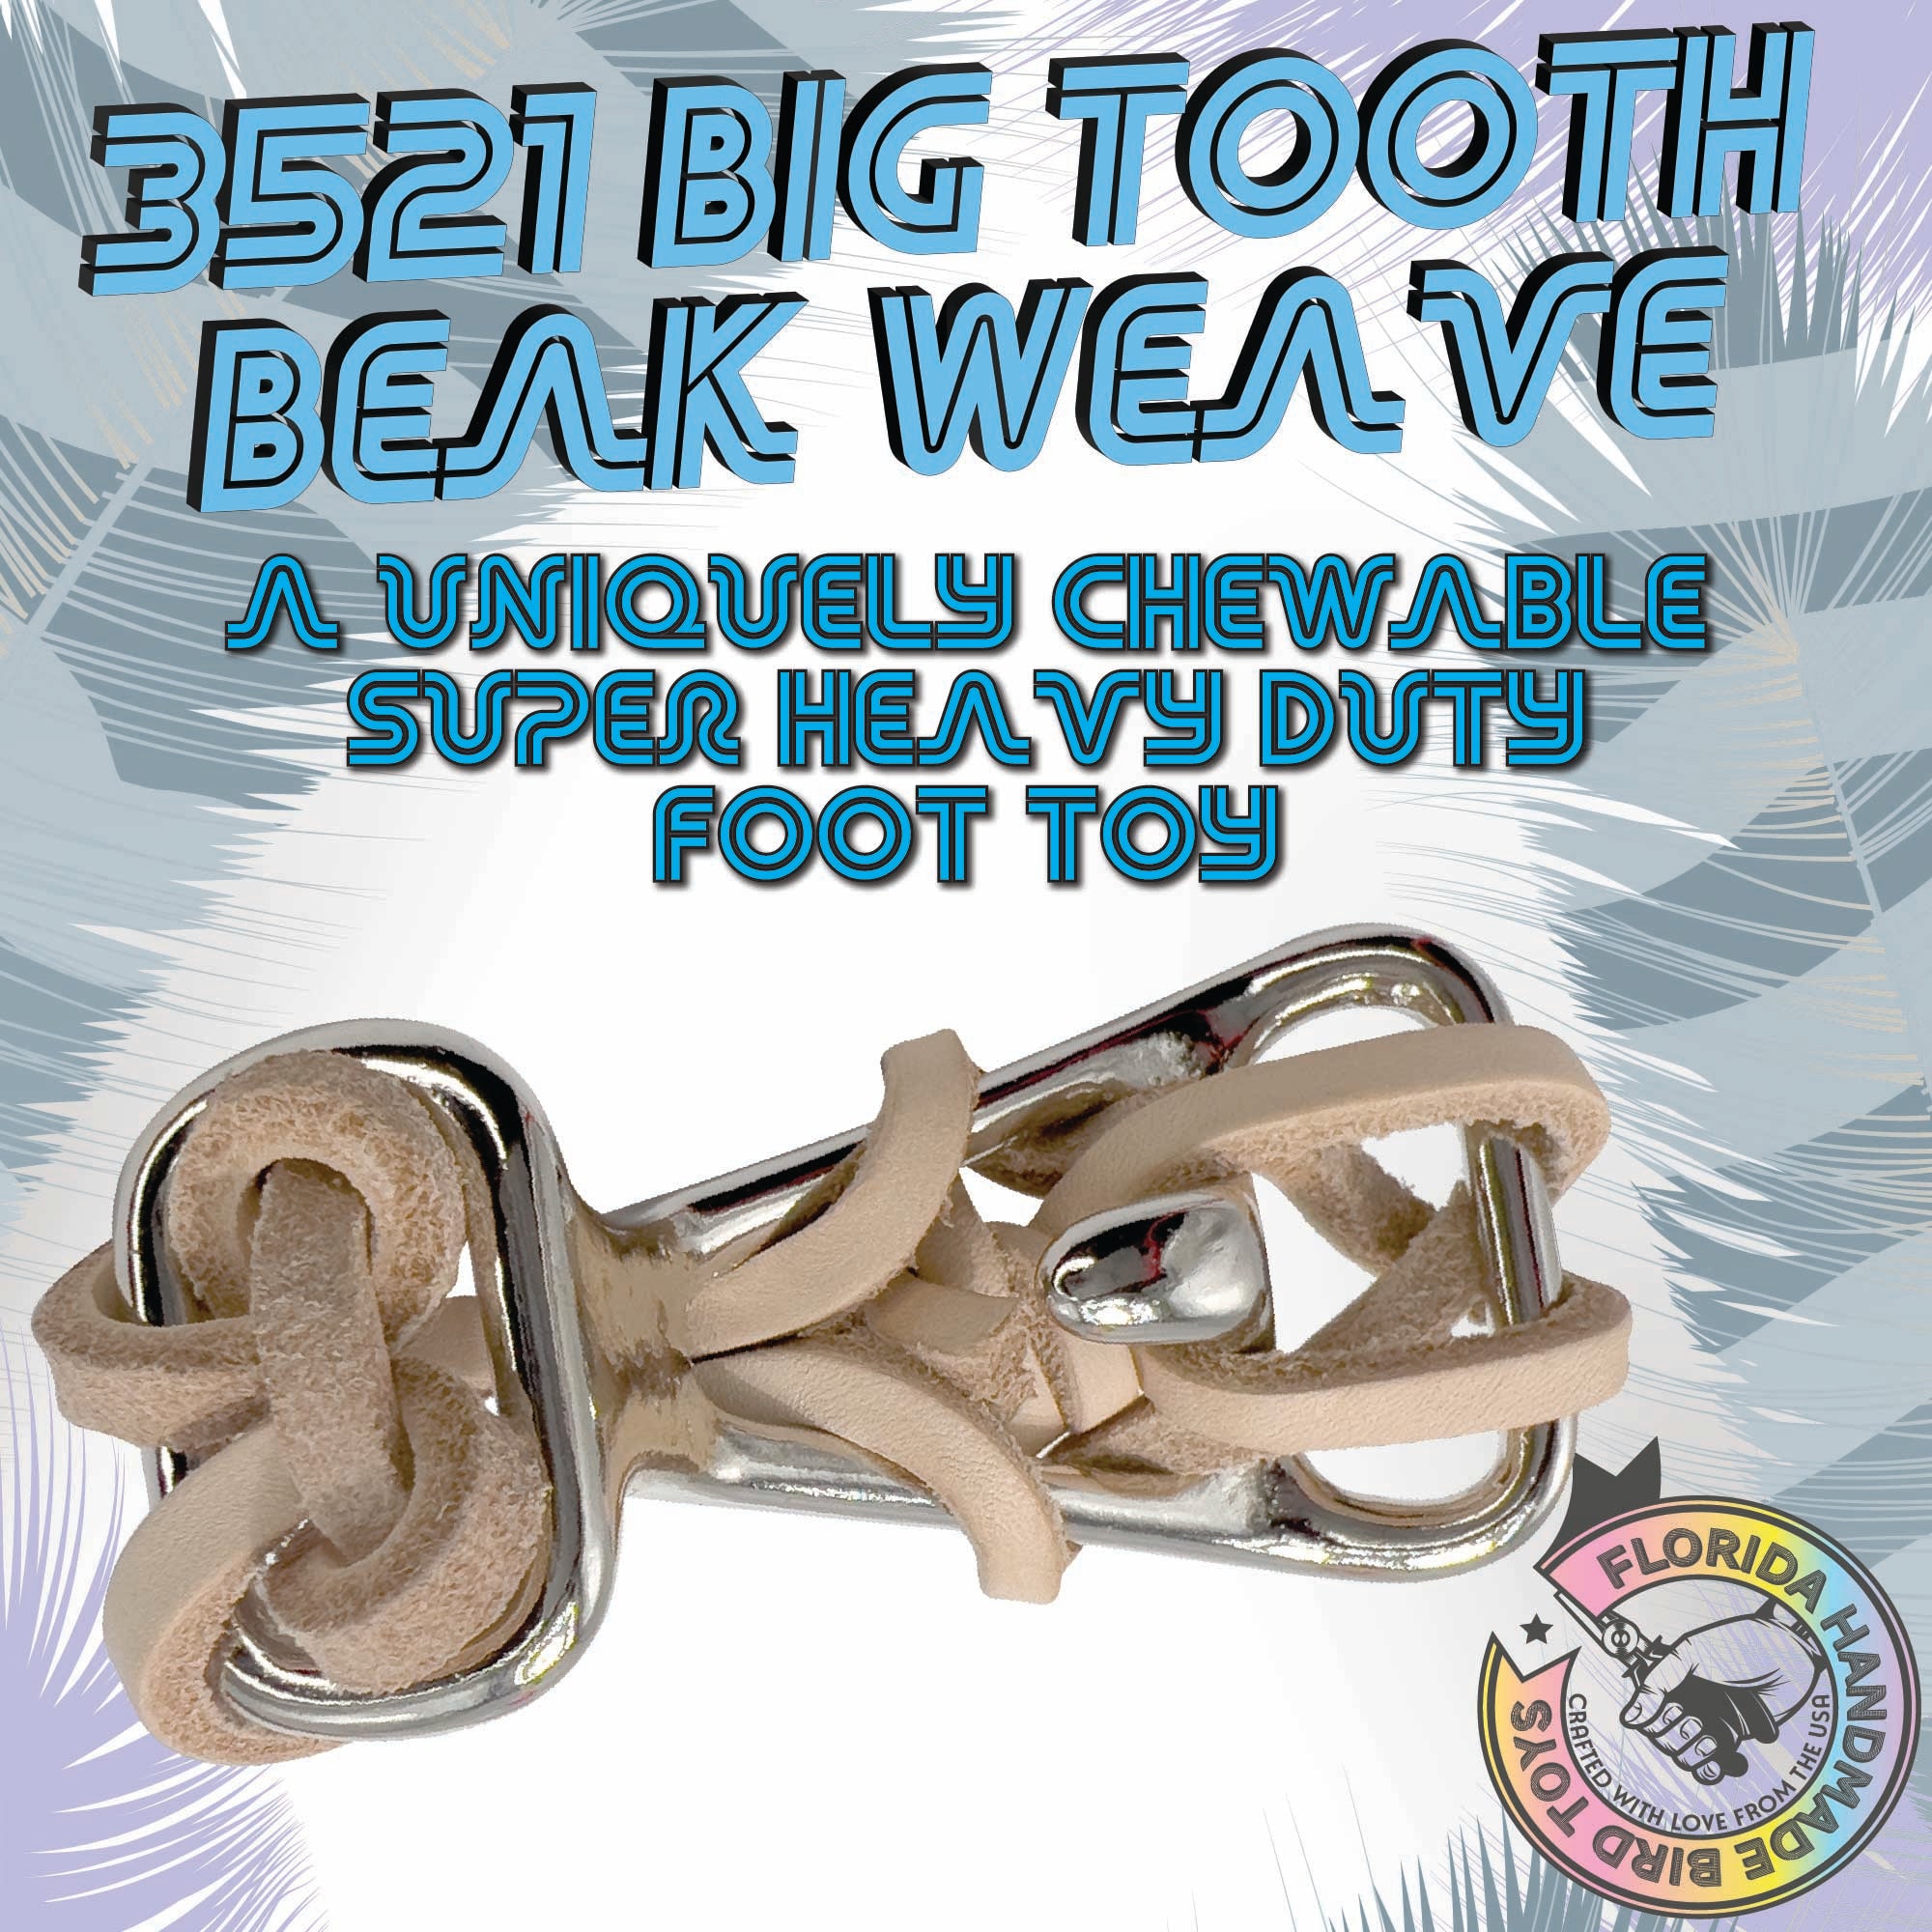 3521 Big Tooth Beak Weave